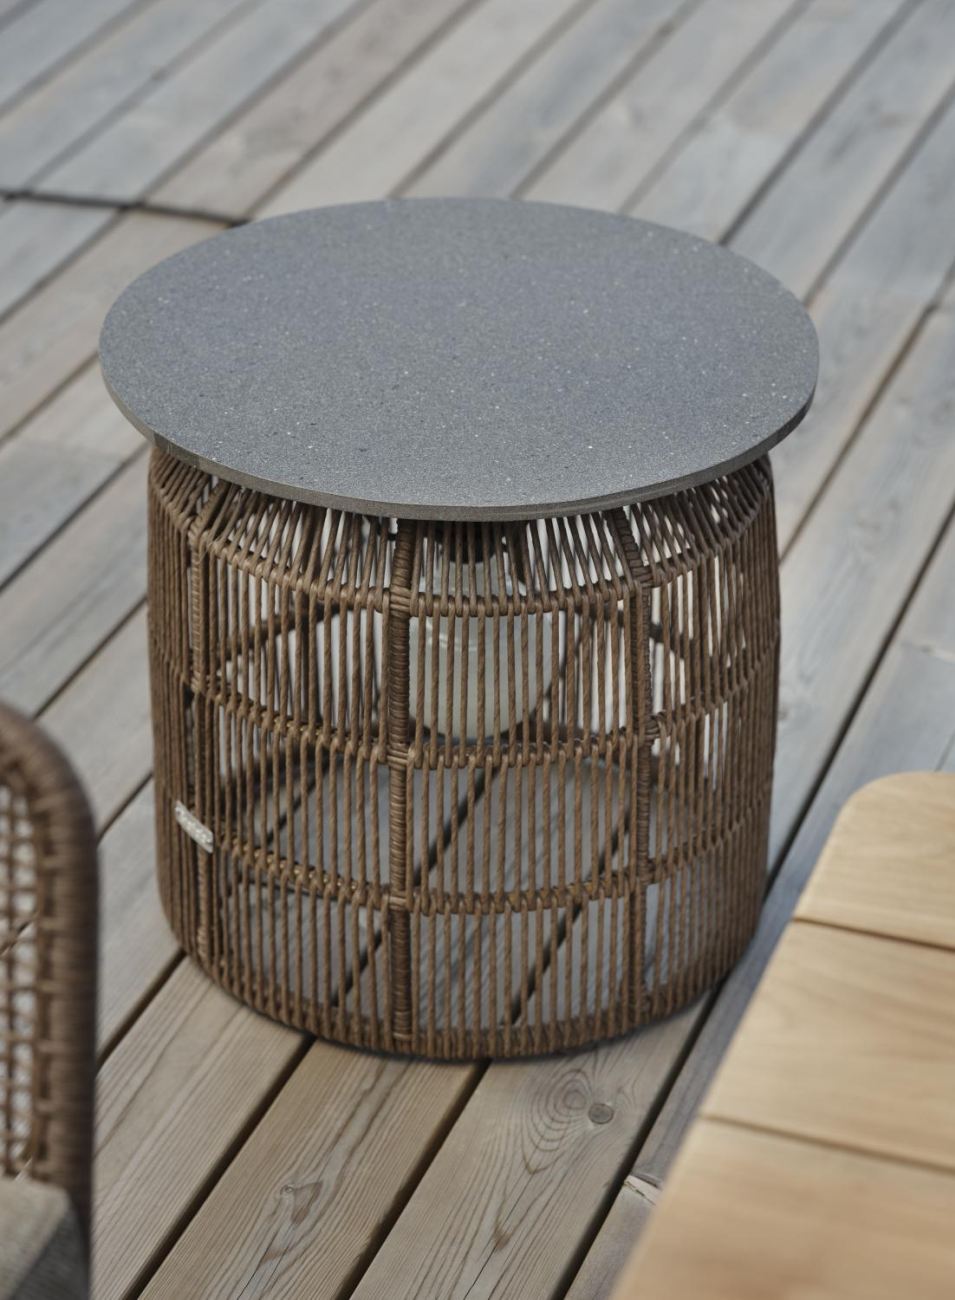 Der Gartenbeistelltisch Pamir überzeugt mit seinem modernen Design. Gefertigt wurde die Tischplatte aus Granit und hat einen graue Farbton. Das Gestell ist auch aus Rattan und hat eine braune Farbe. Der Tisch besitzt einen Durchmesser von 50 cm.